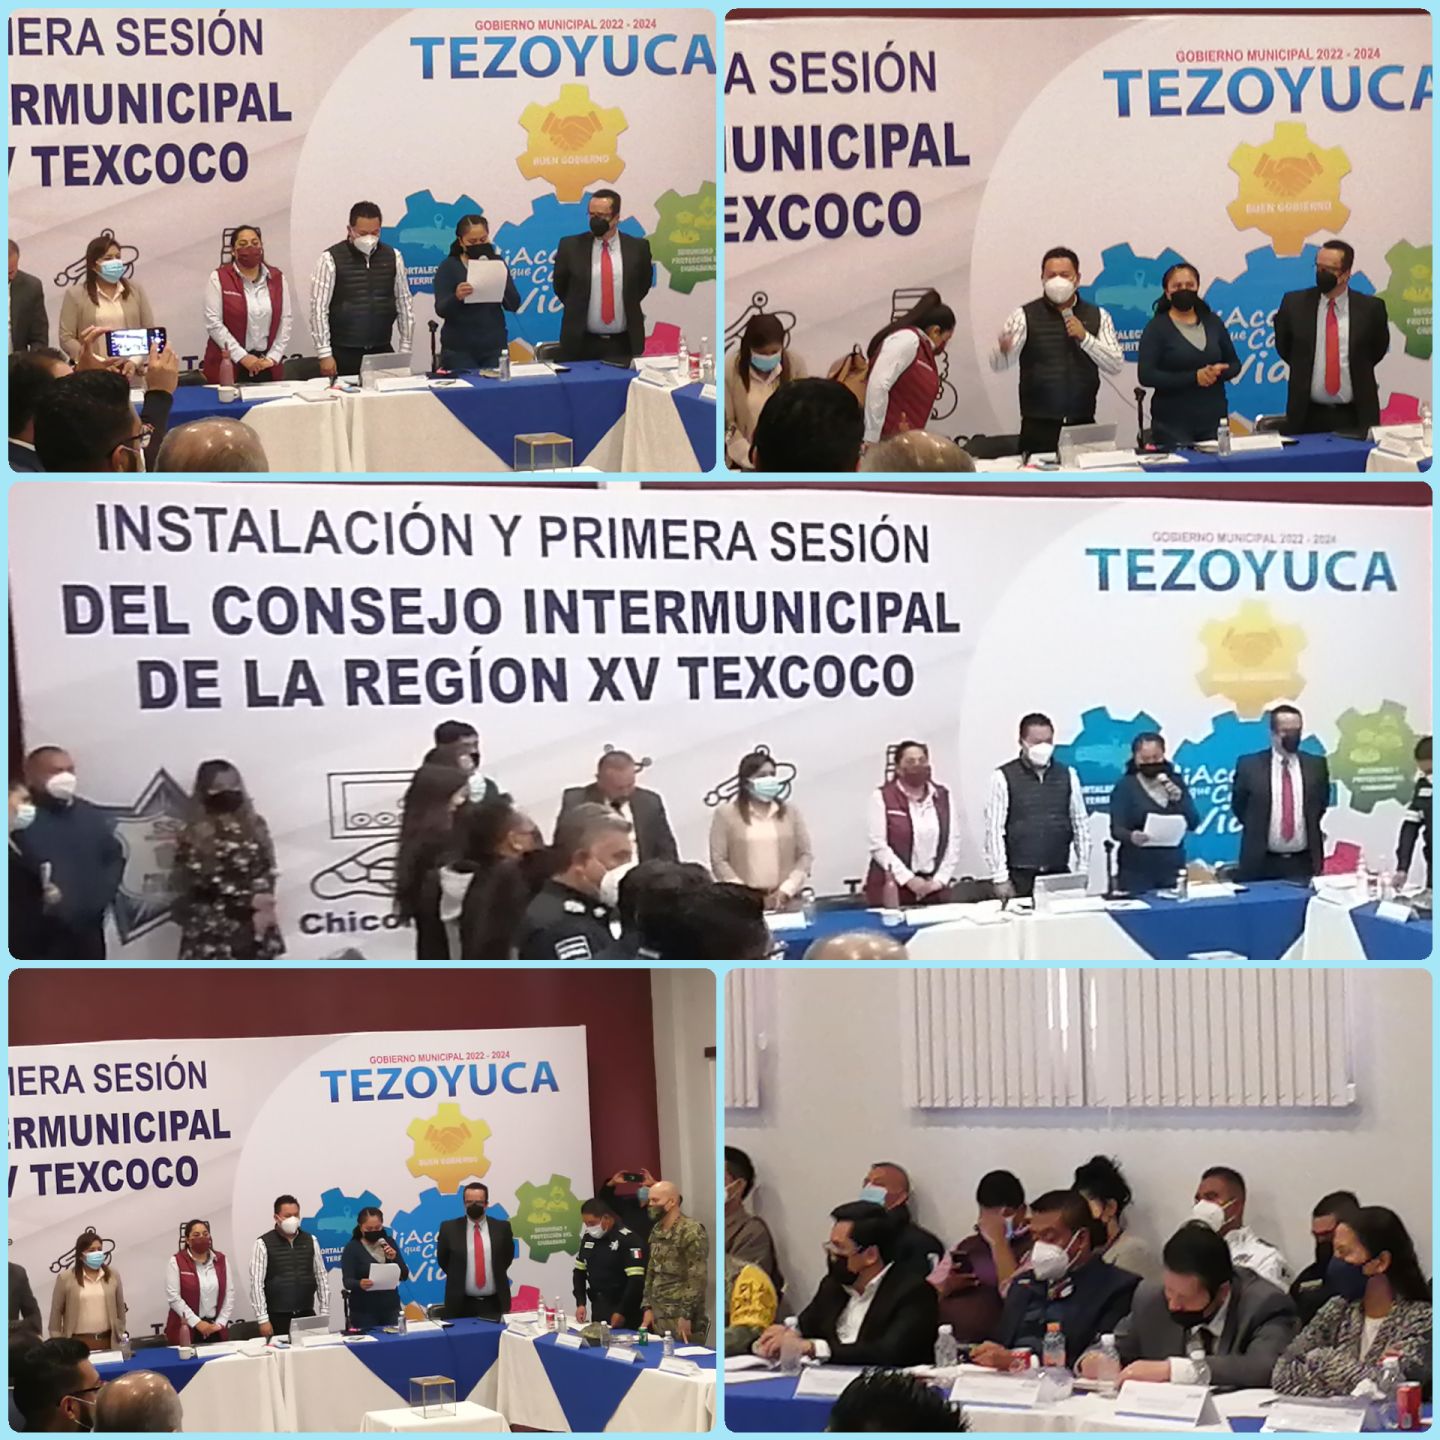 TEZOYUCA ENCABEZA EL CONSEJO INTERMUNICIPAL REGIÓN XV TEXCOCO 